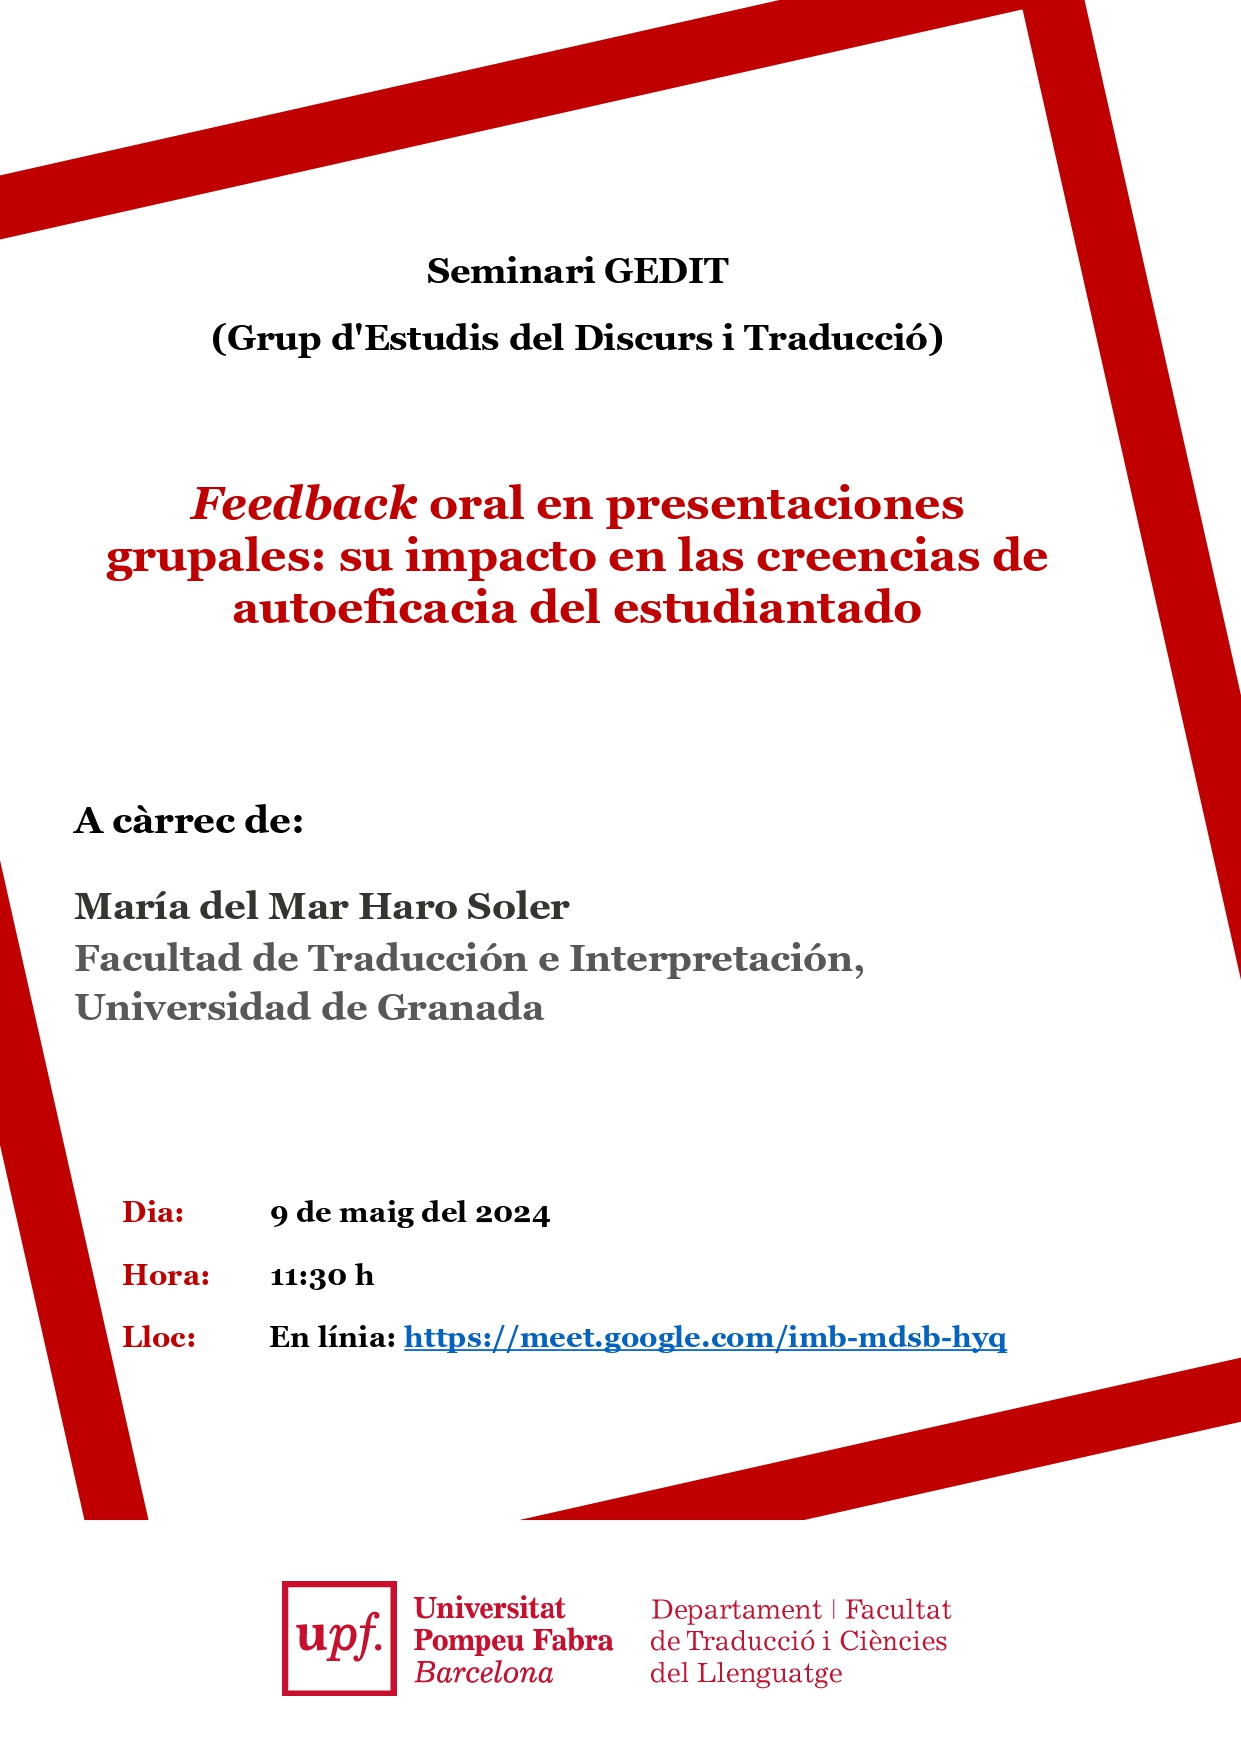 09/05/2024 Seminari en línia del GEDIT, a càrrec de María del Mar Haro Soler (Universidad de Granada)